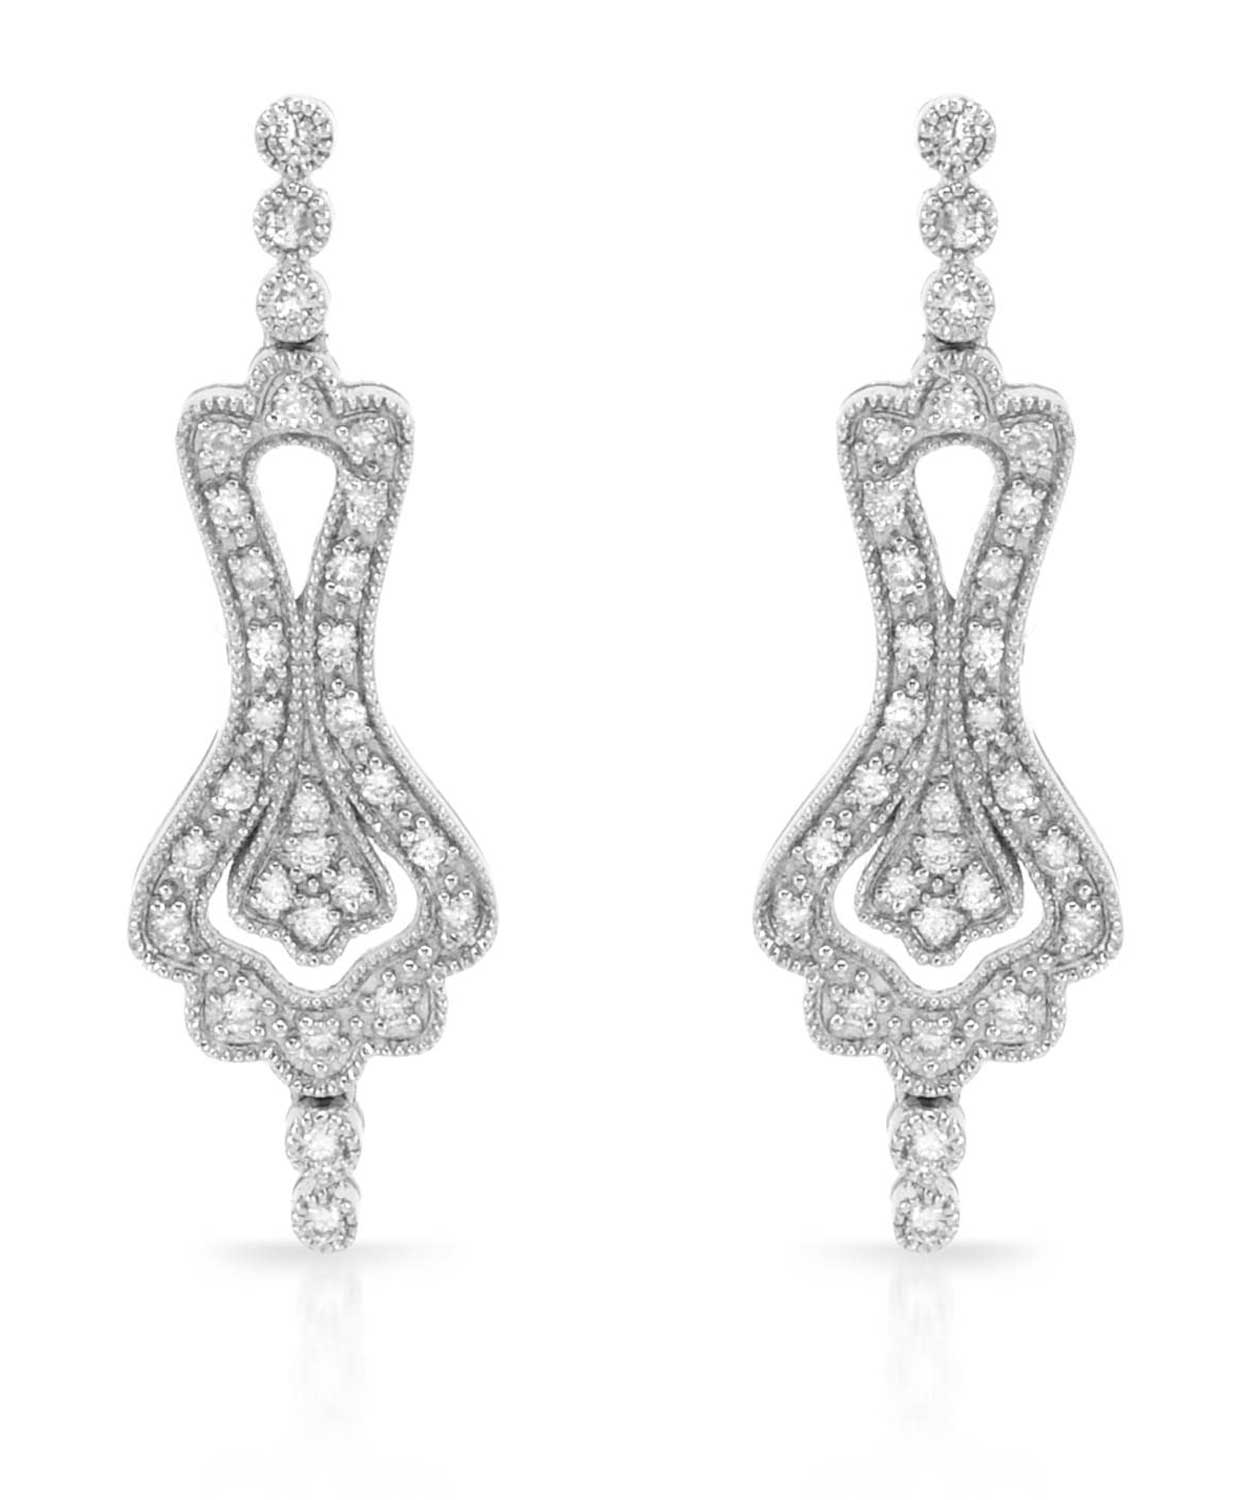 0.65 ctw Diamond 14k White Gold Elegant Earrings View 1